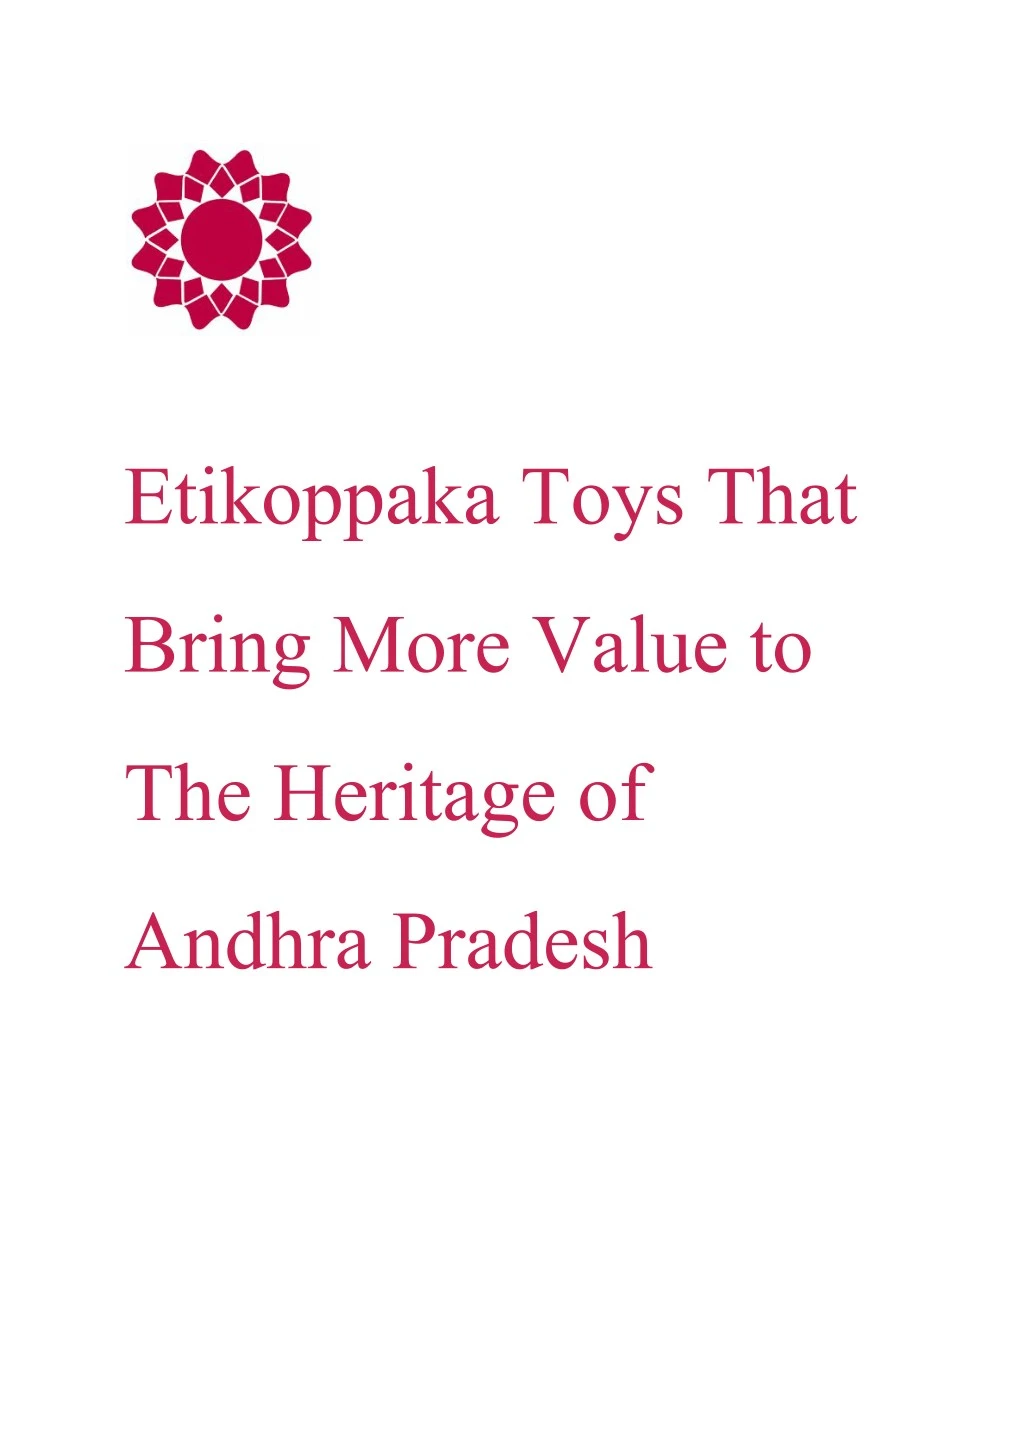 etikoppaka toys that